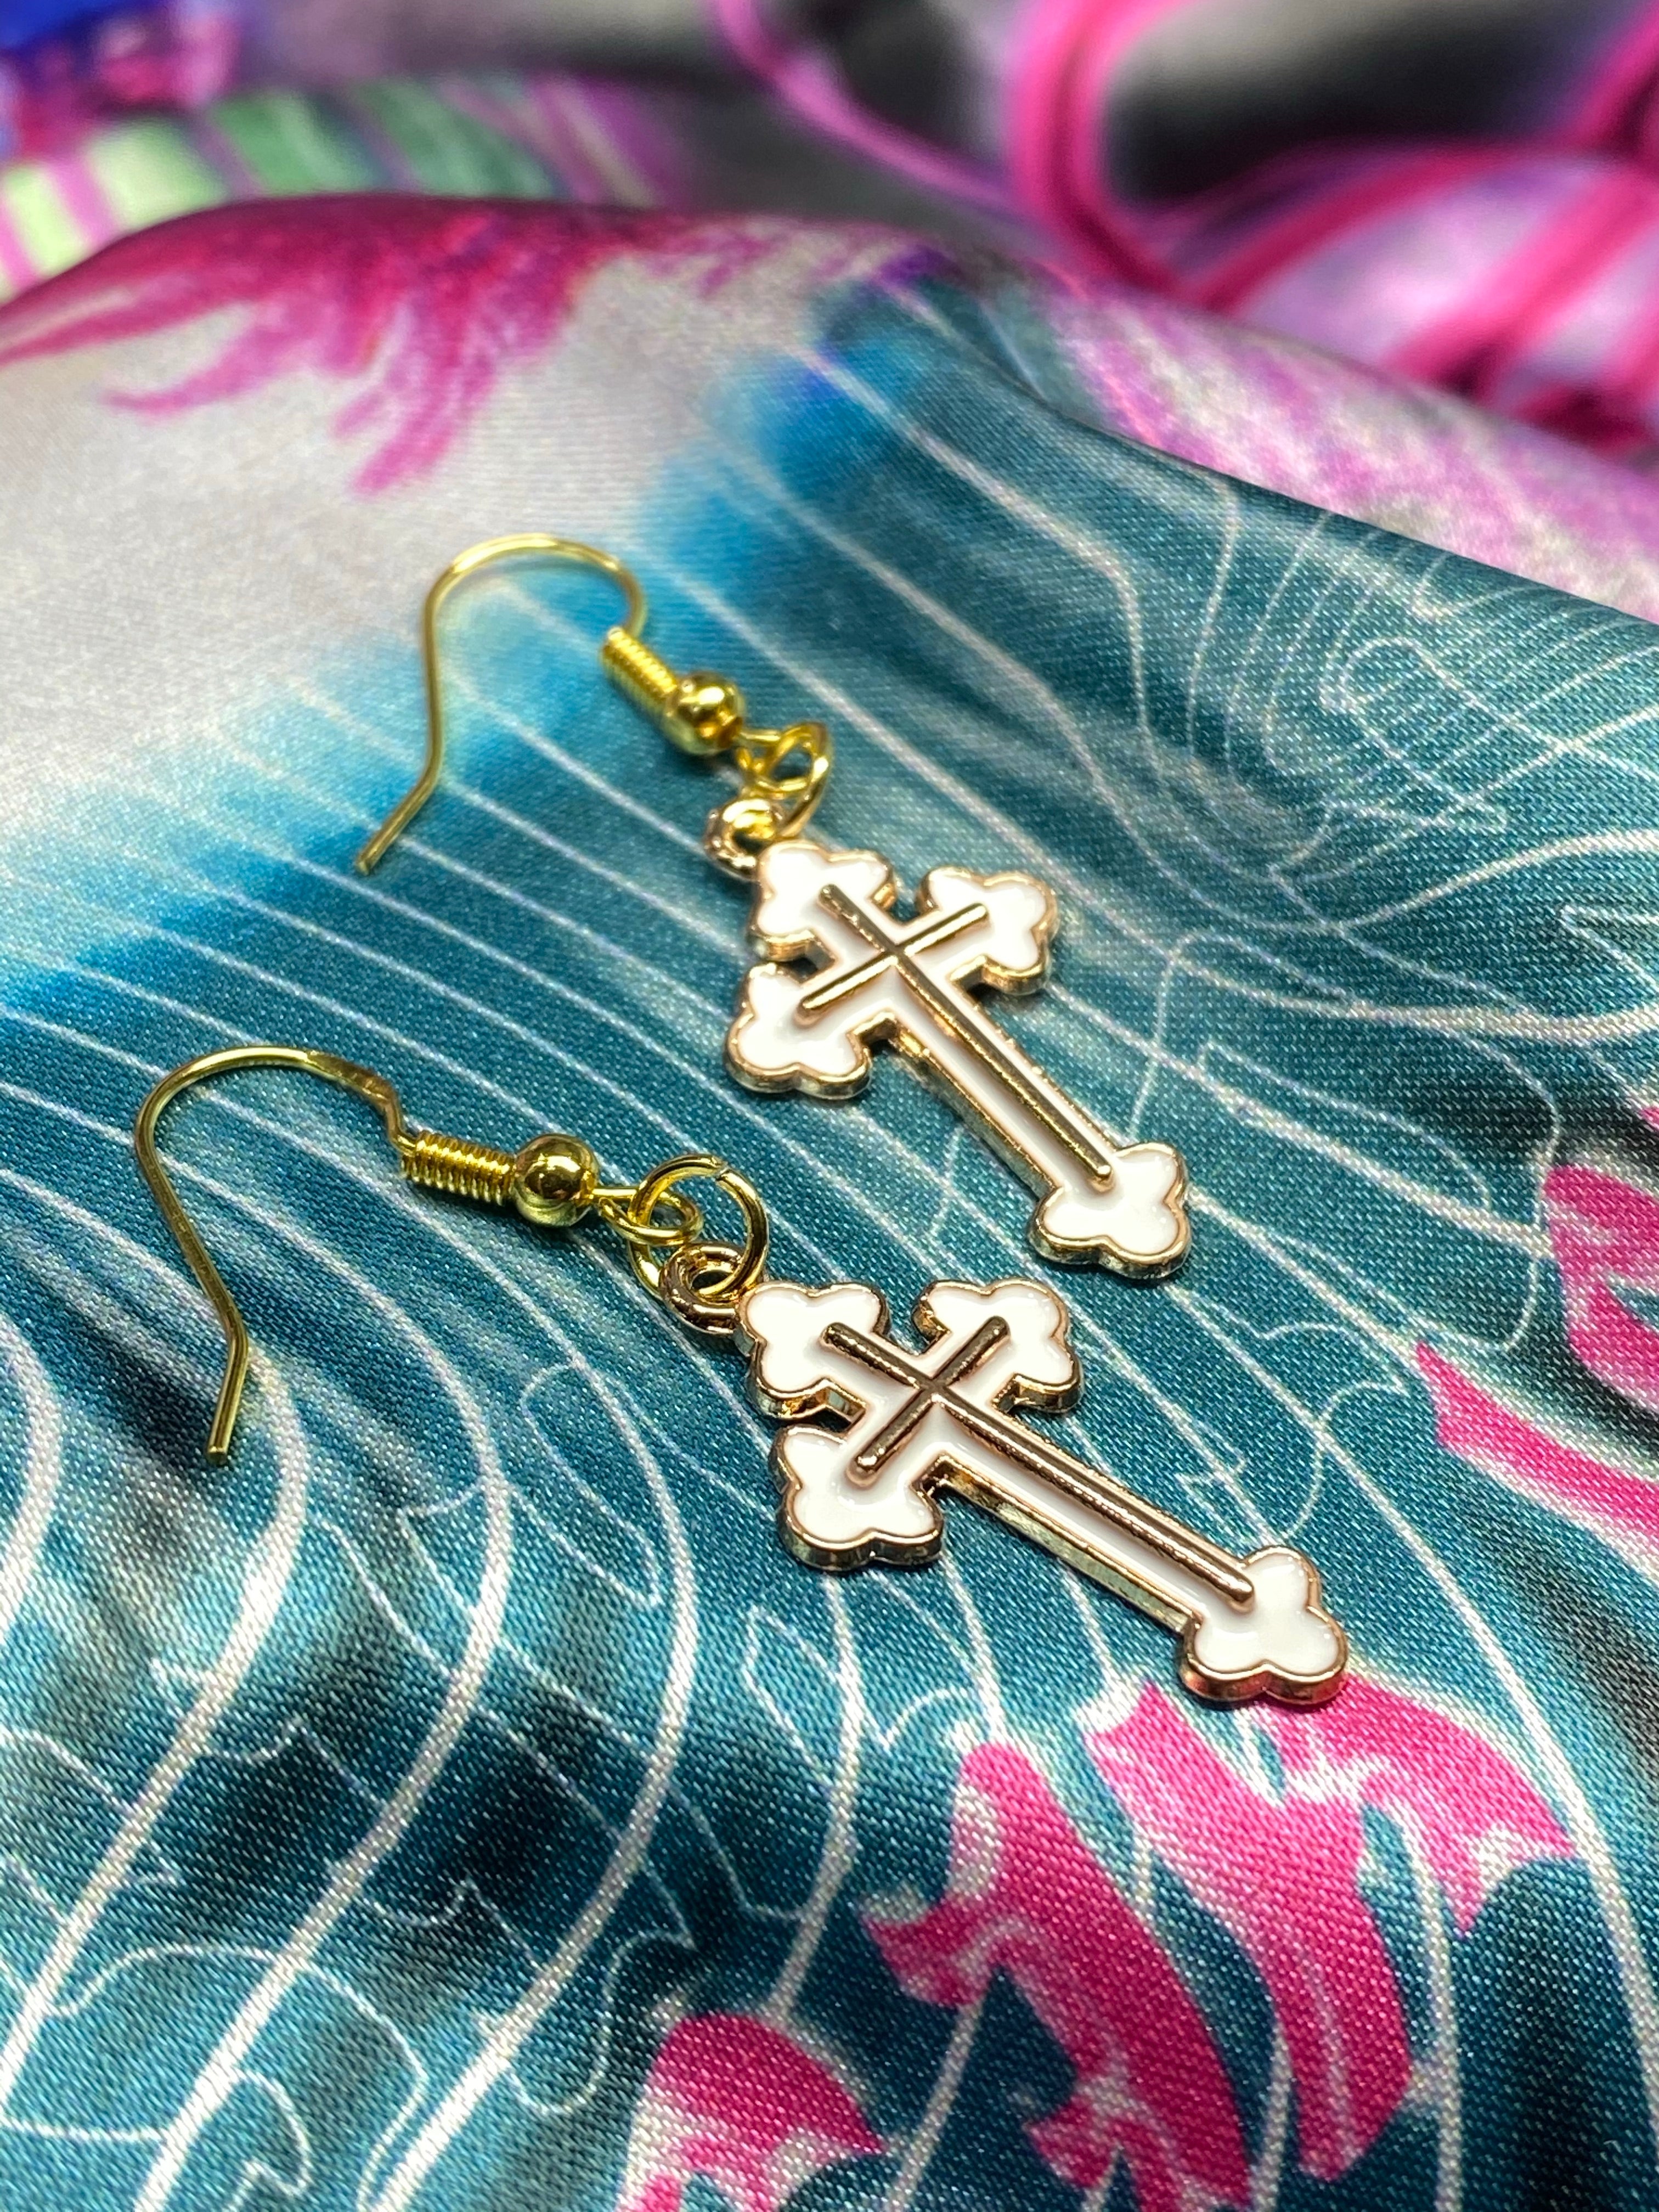 Gold cross earrings